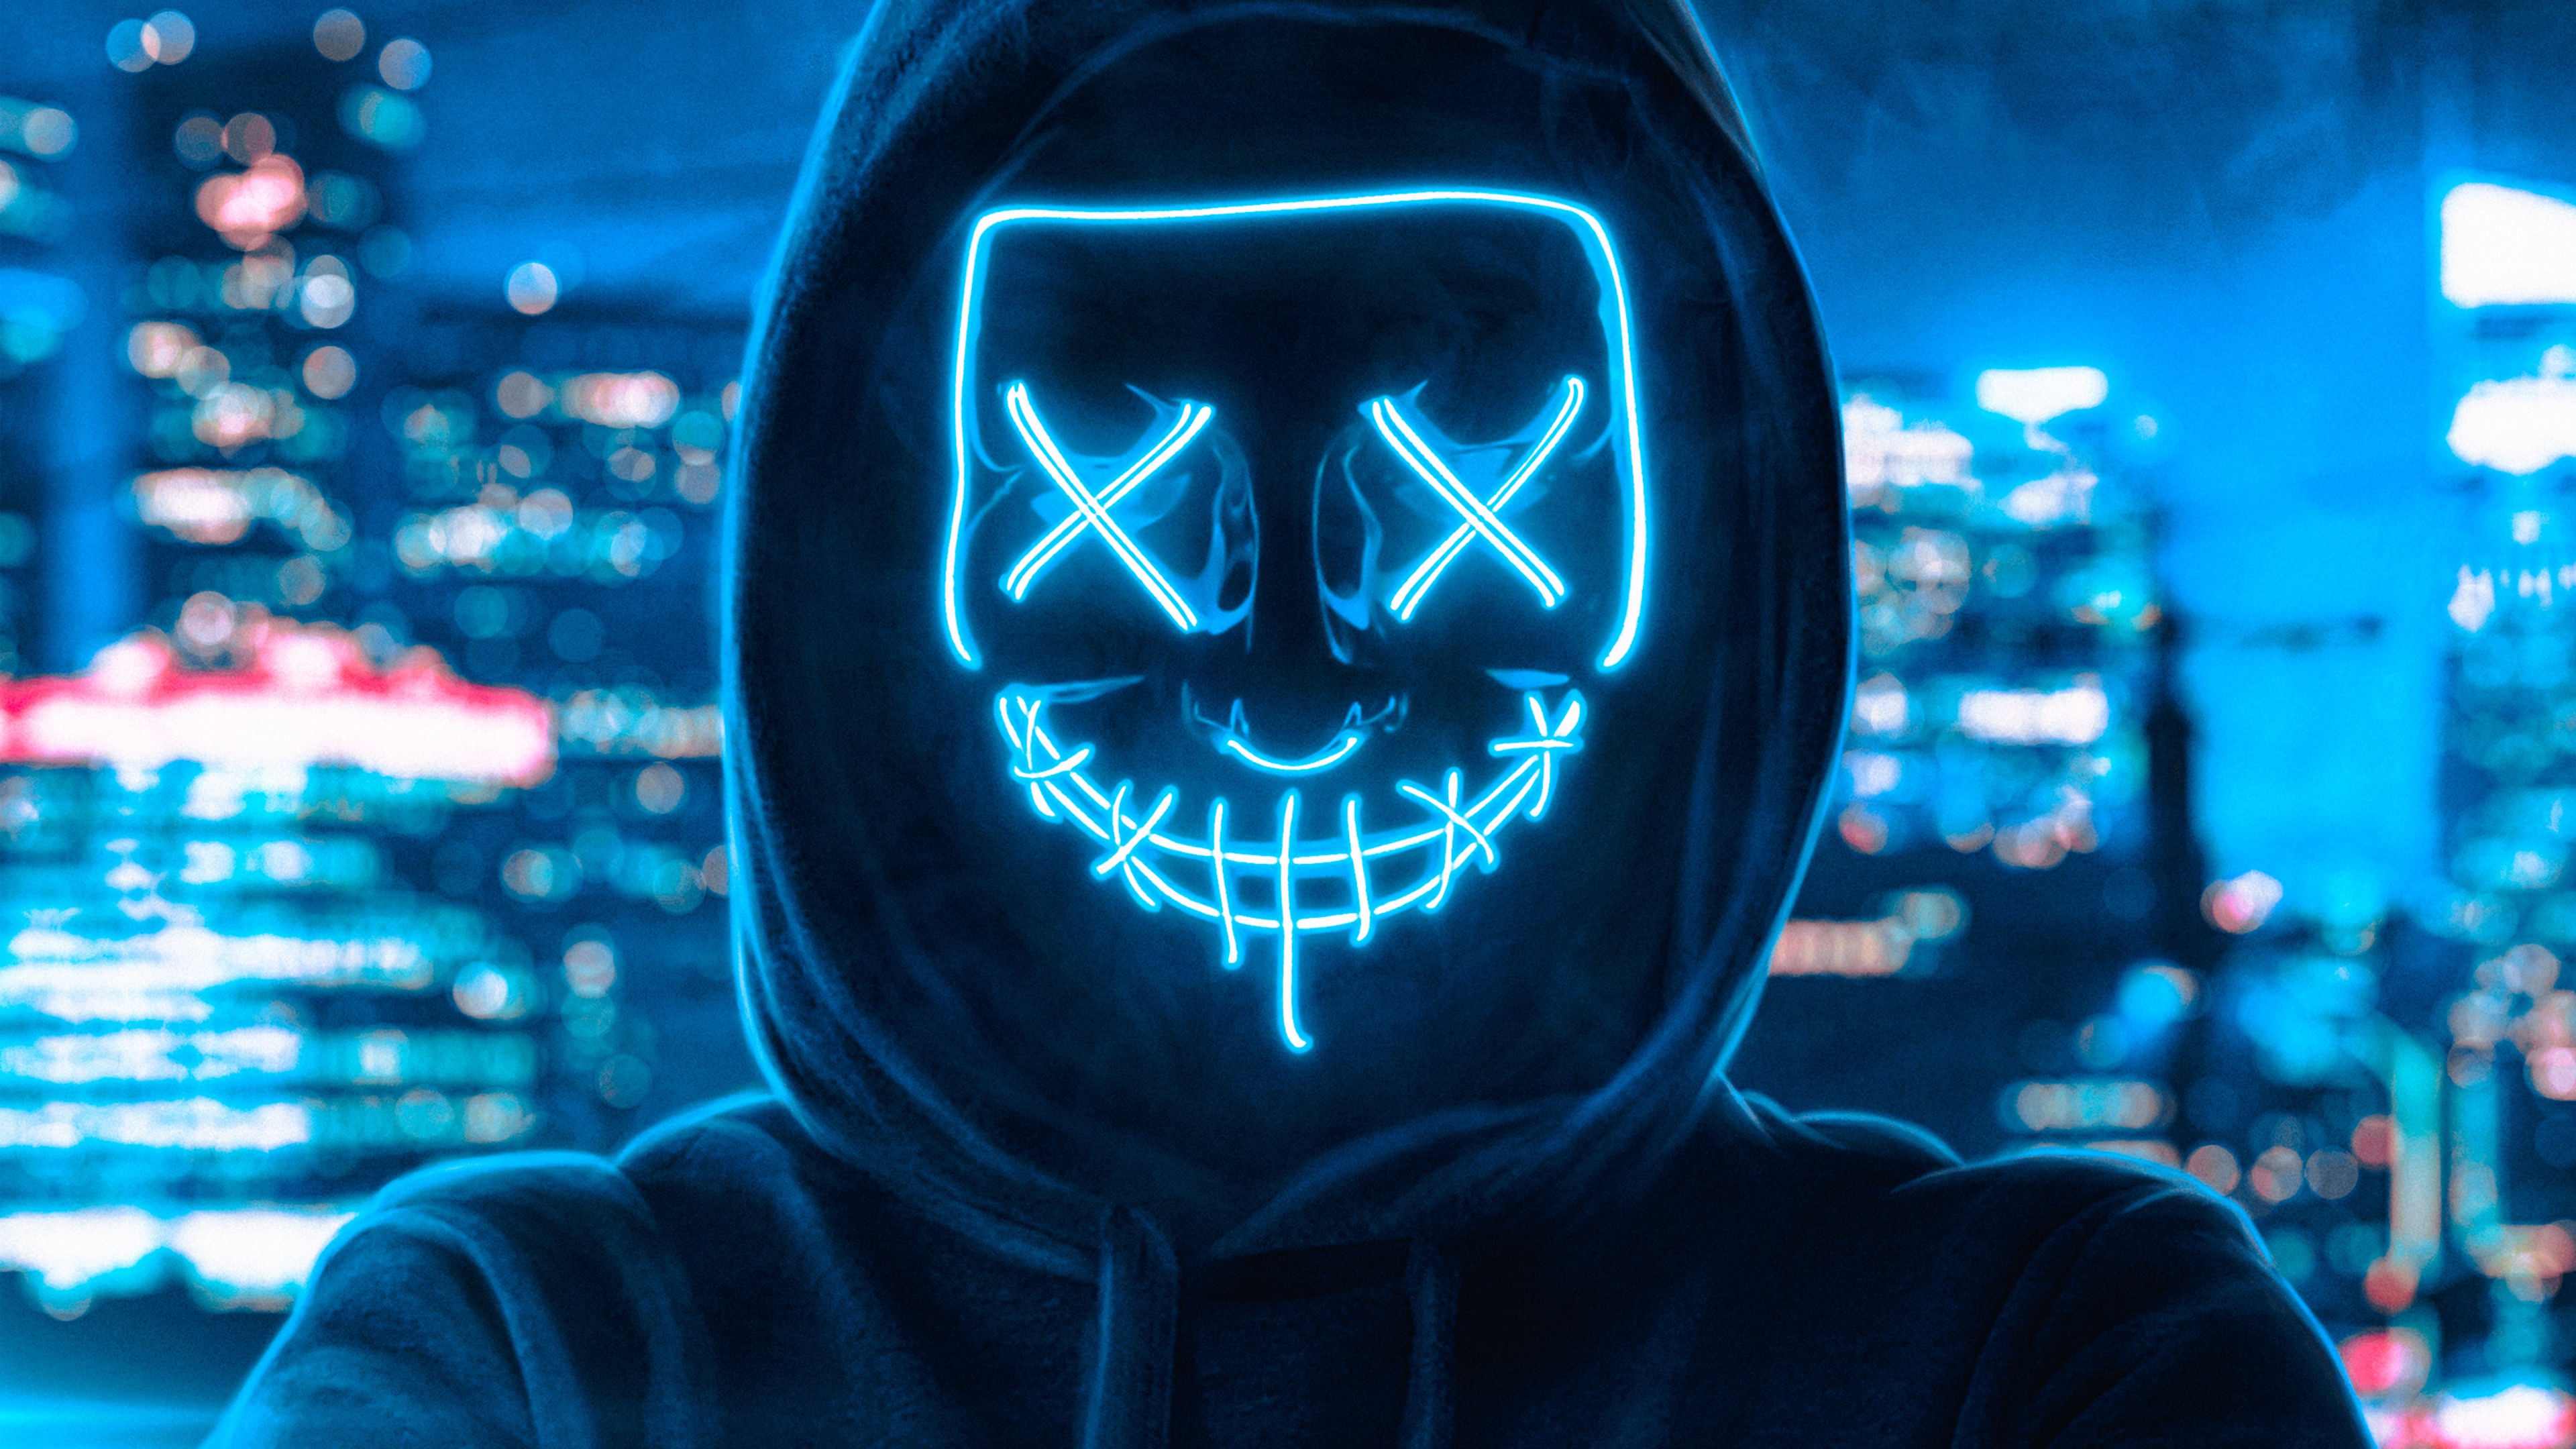 Avatar the gamer. Анонимус неон Маск Маск. Человек в неоновой маске. Маска хакера. Неоновая маска с капюшоном.